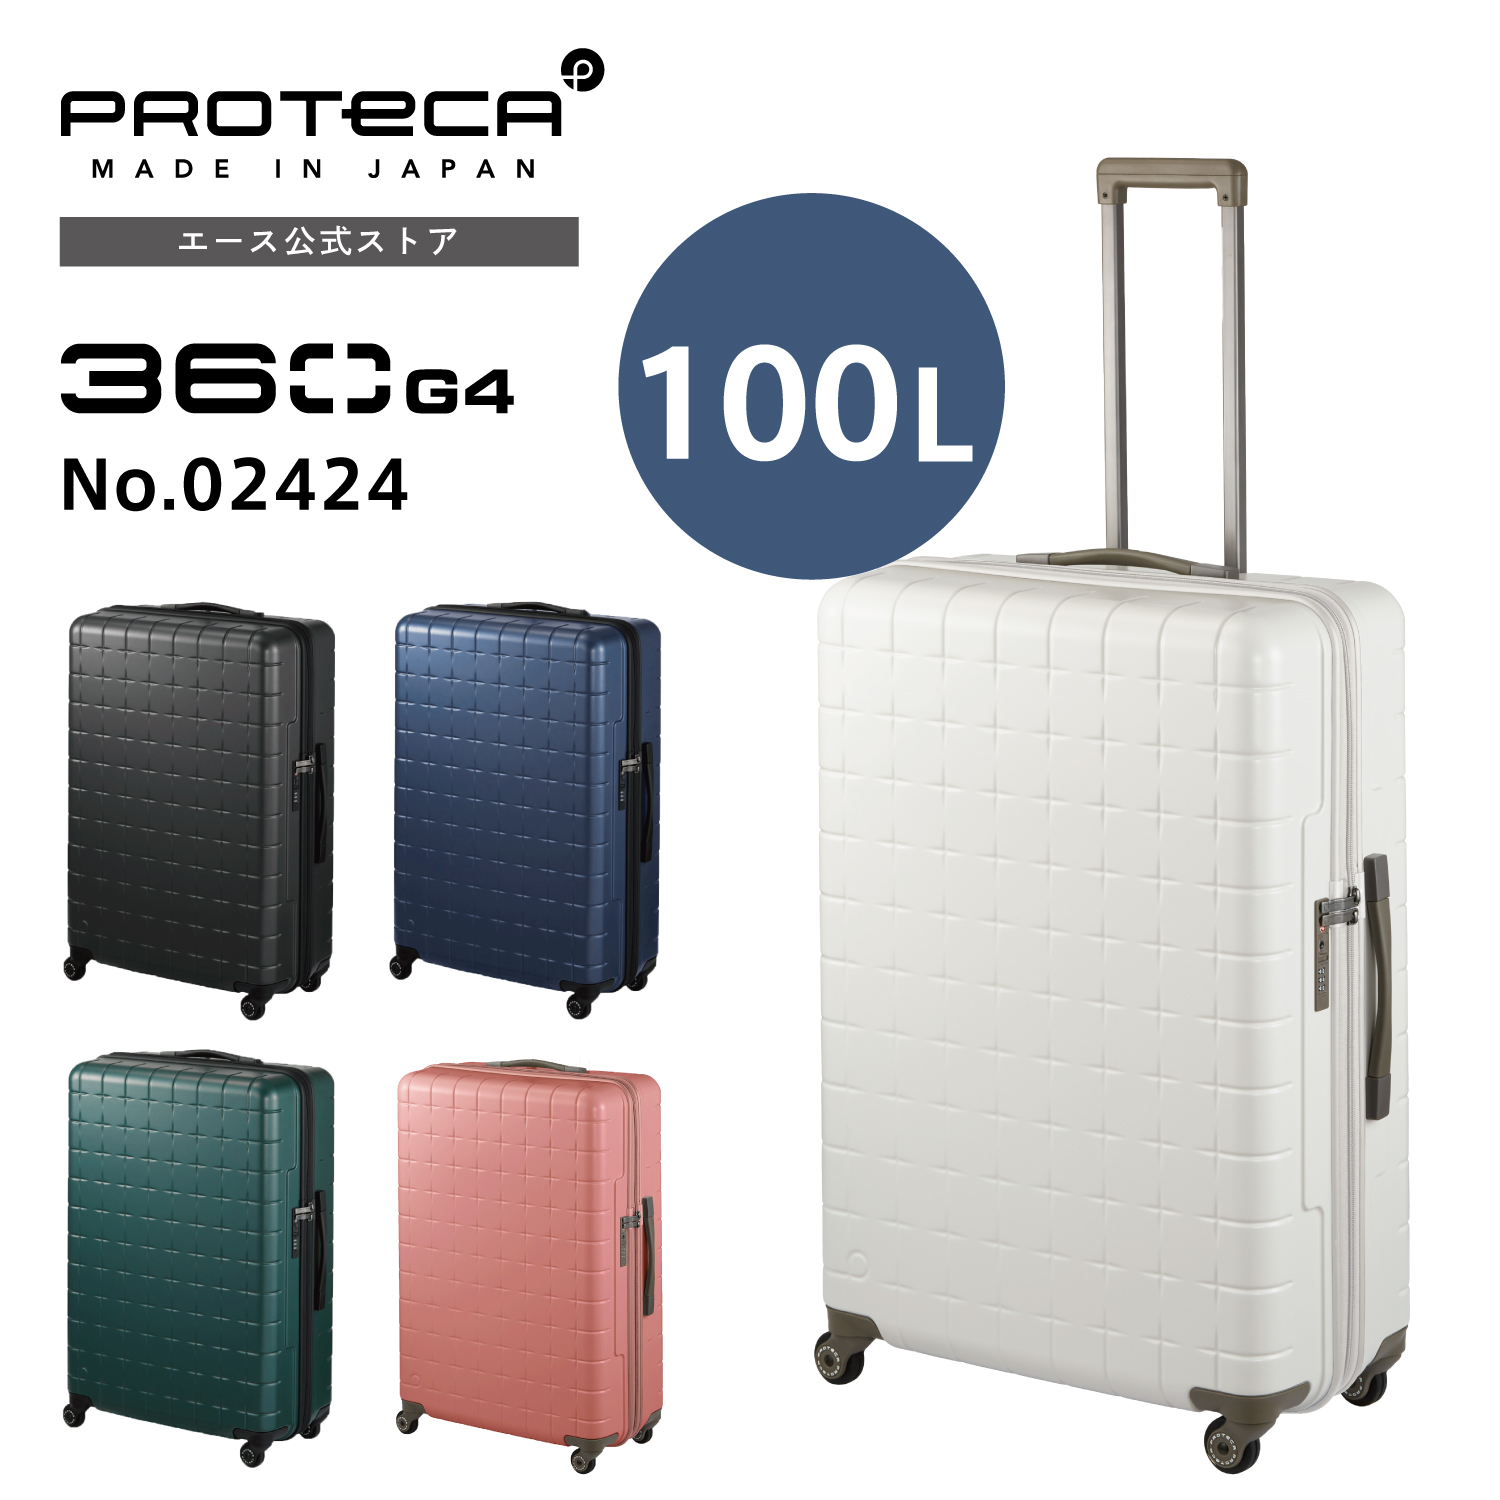 スーツケース Proteca プロテカ 360G4 360度オープン サイレント 